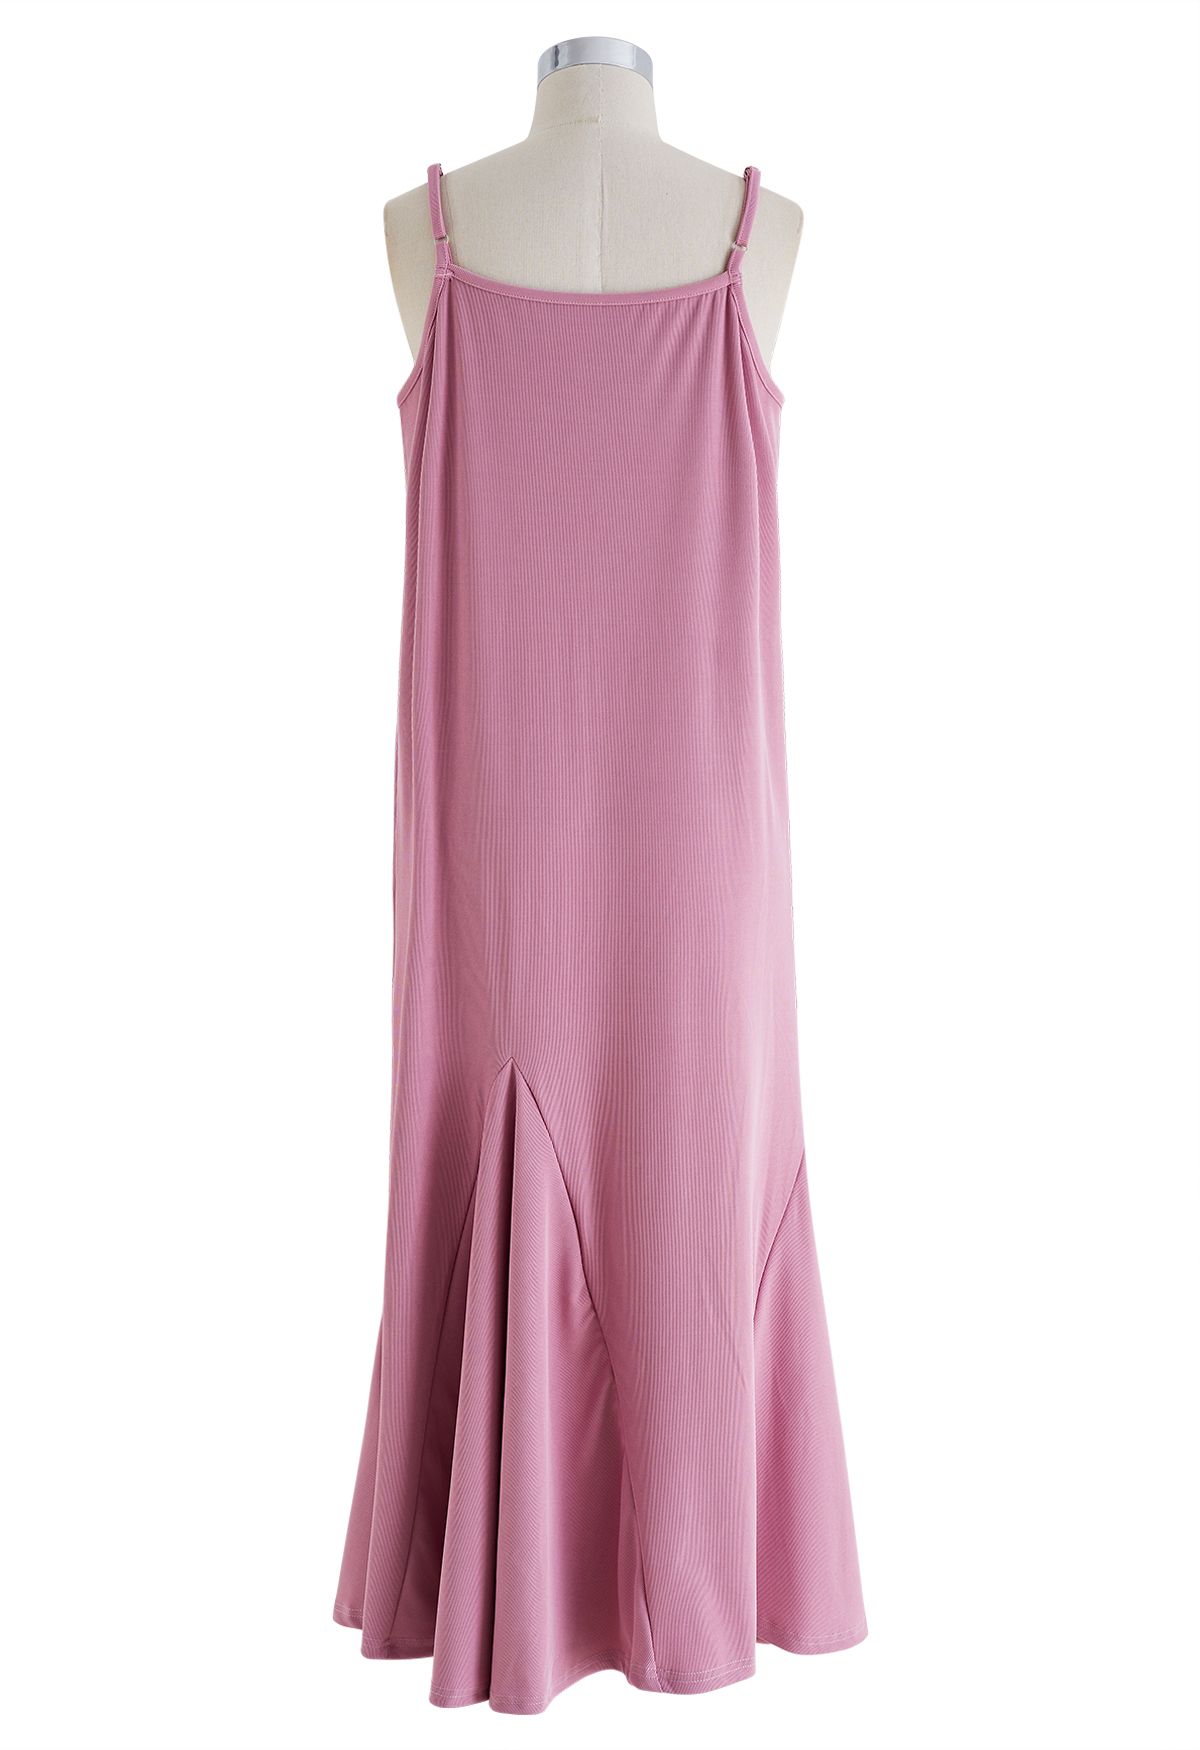 Einfarbiges Cami-Kleid mit Rüschensaum in Pink